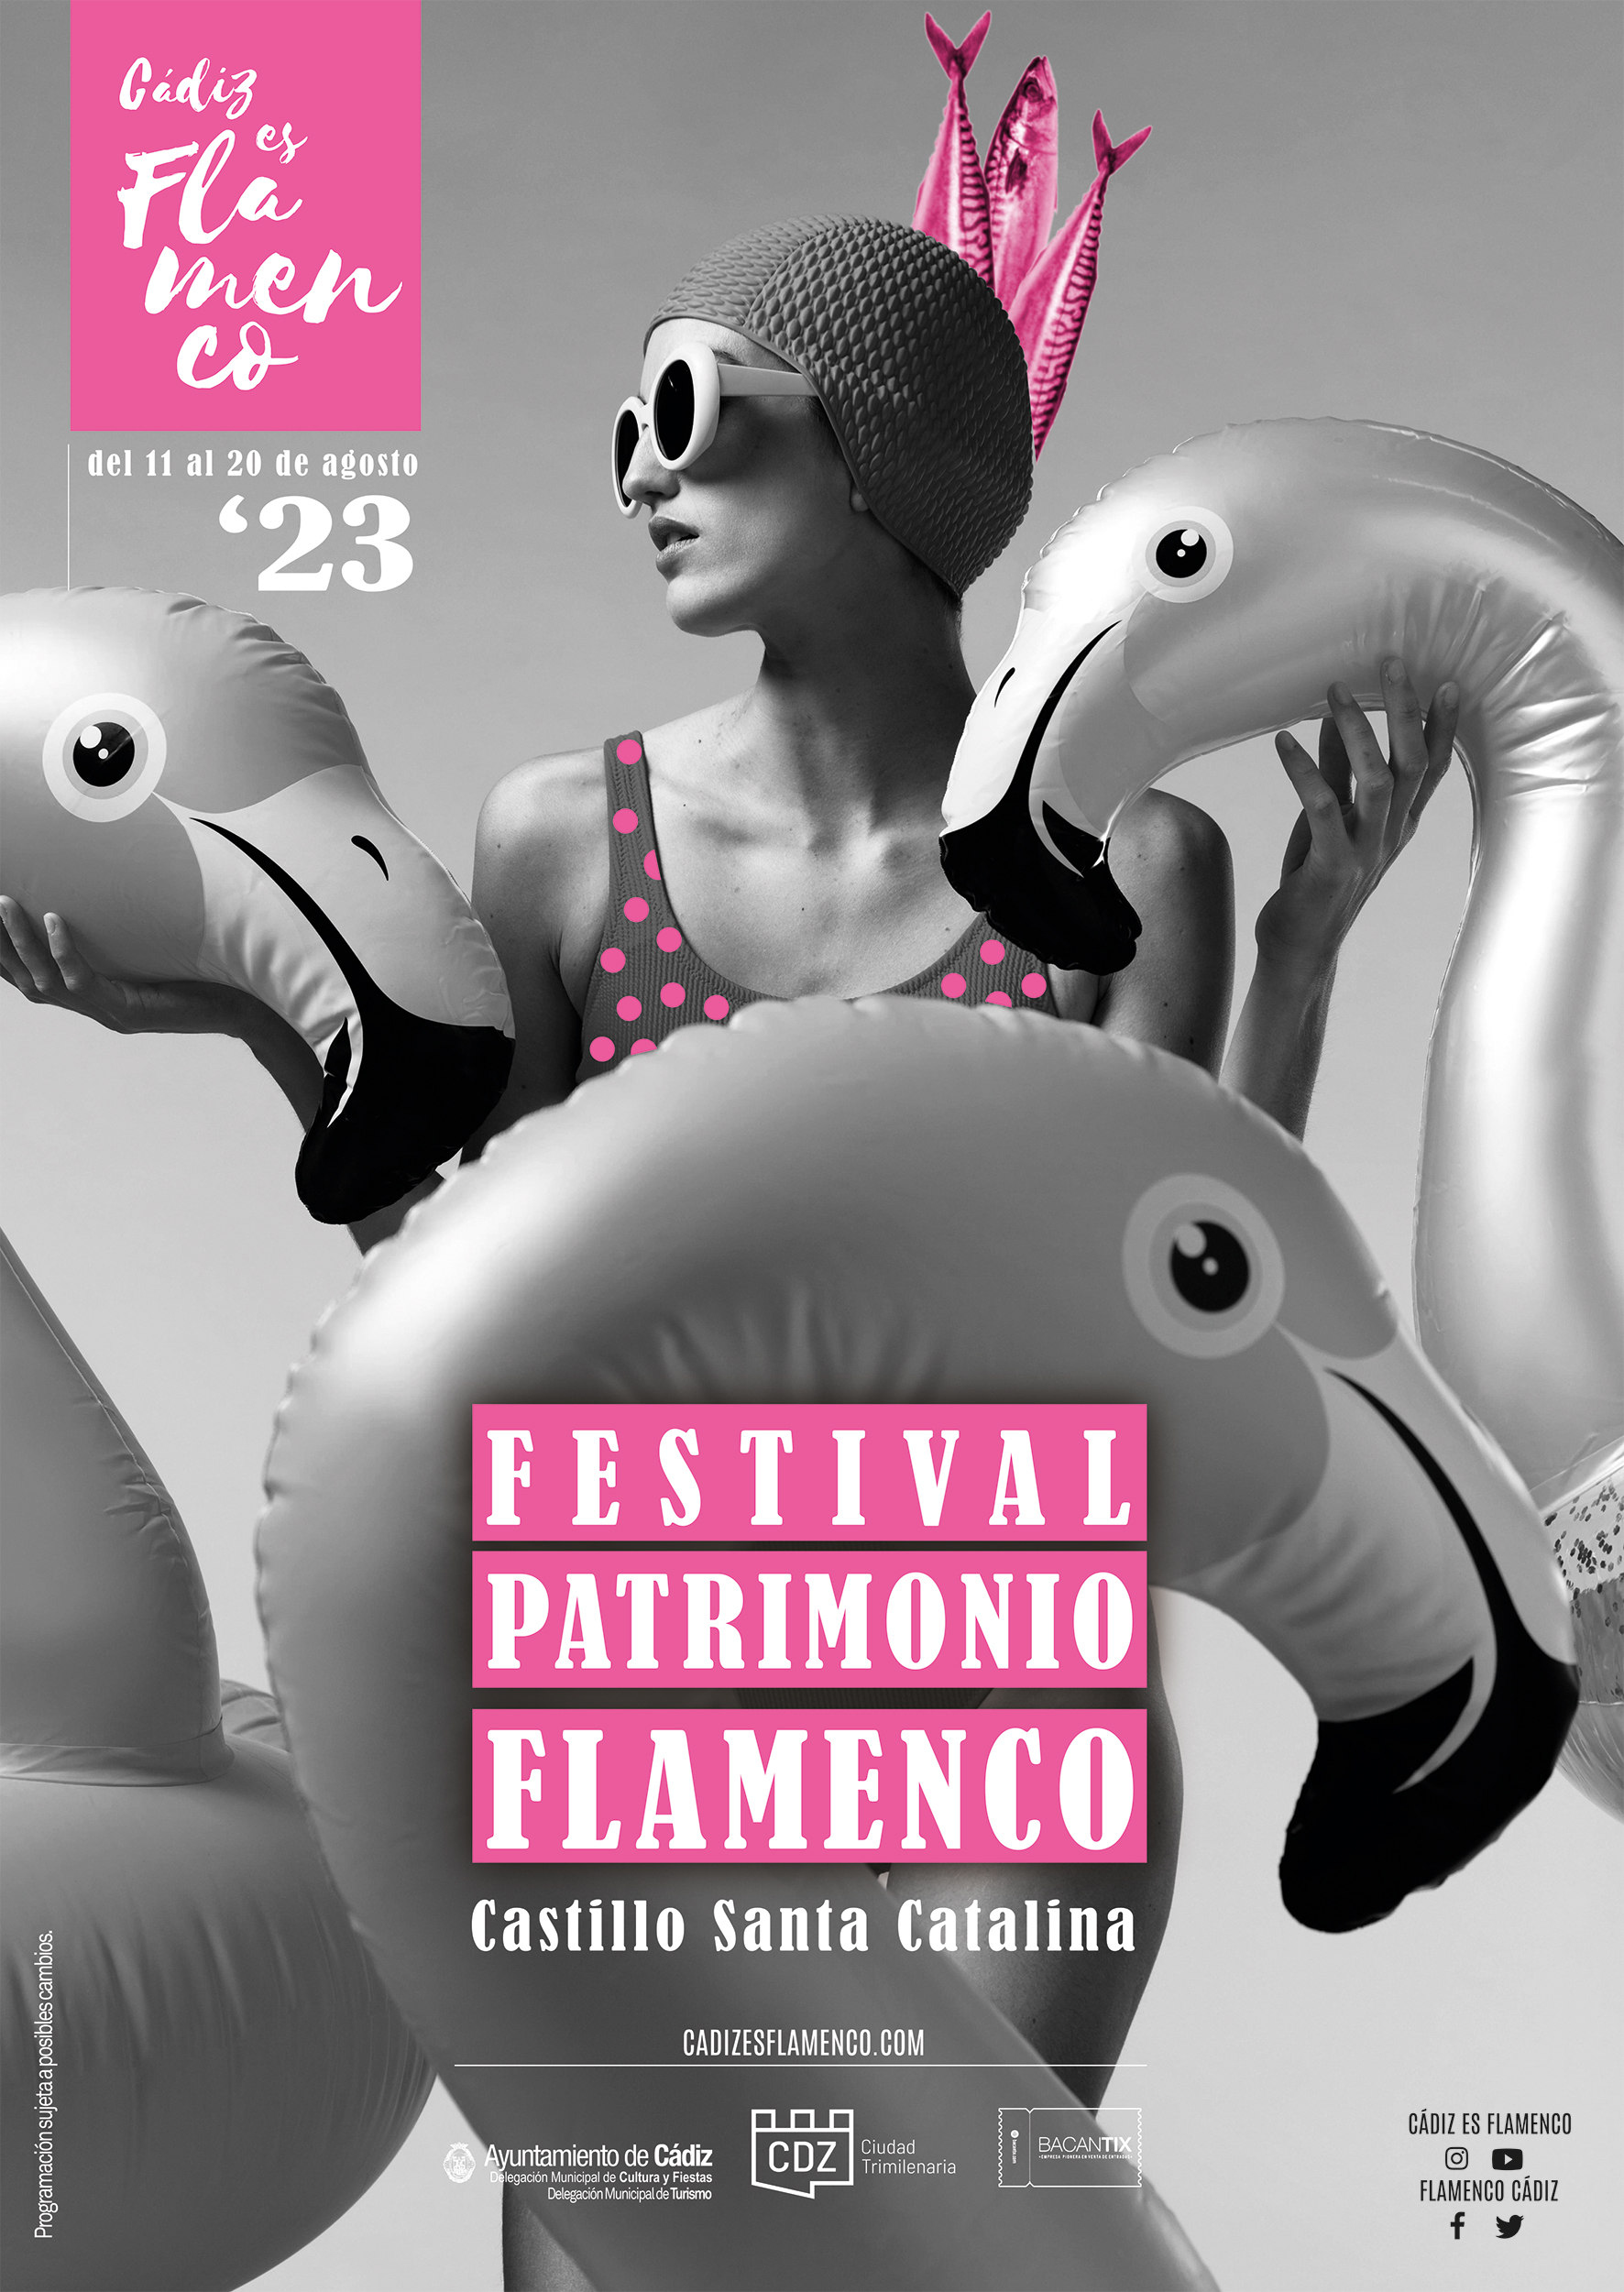 Festival Patrimonio Flamenco Cádiz, del 11 al 20 de agosto, en el Castillo de Santa Catalina